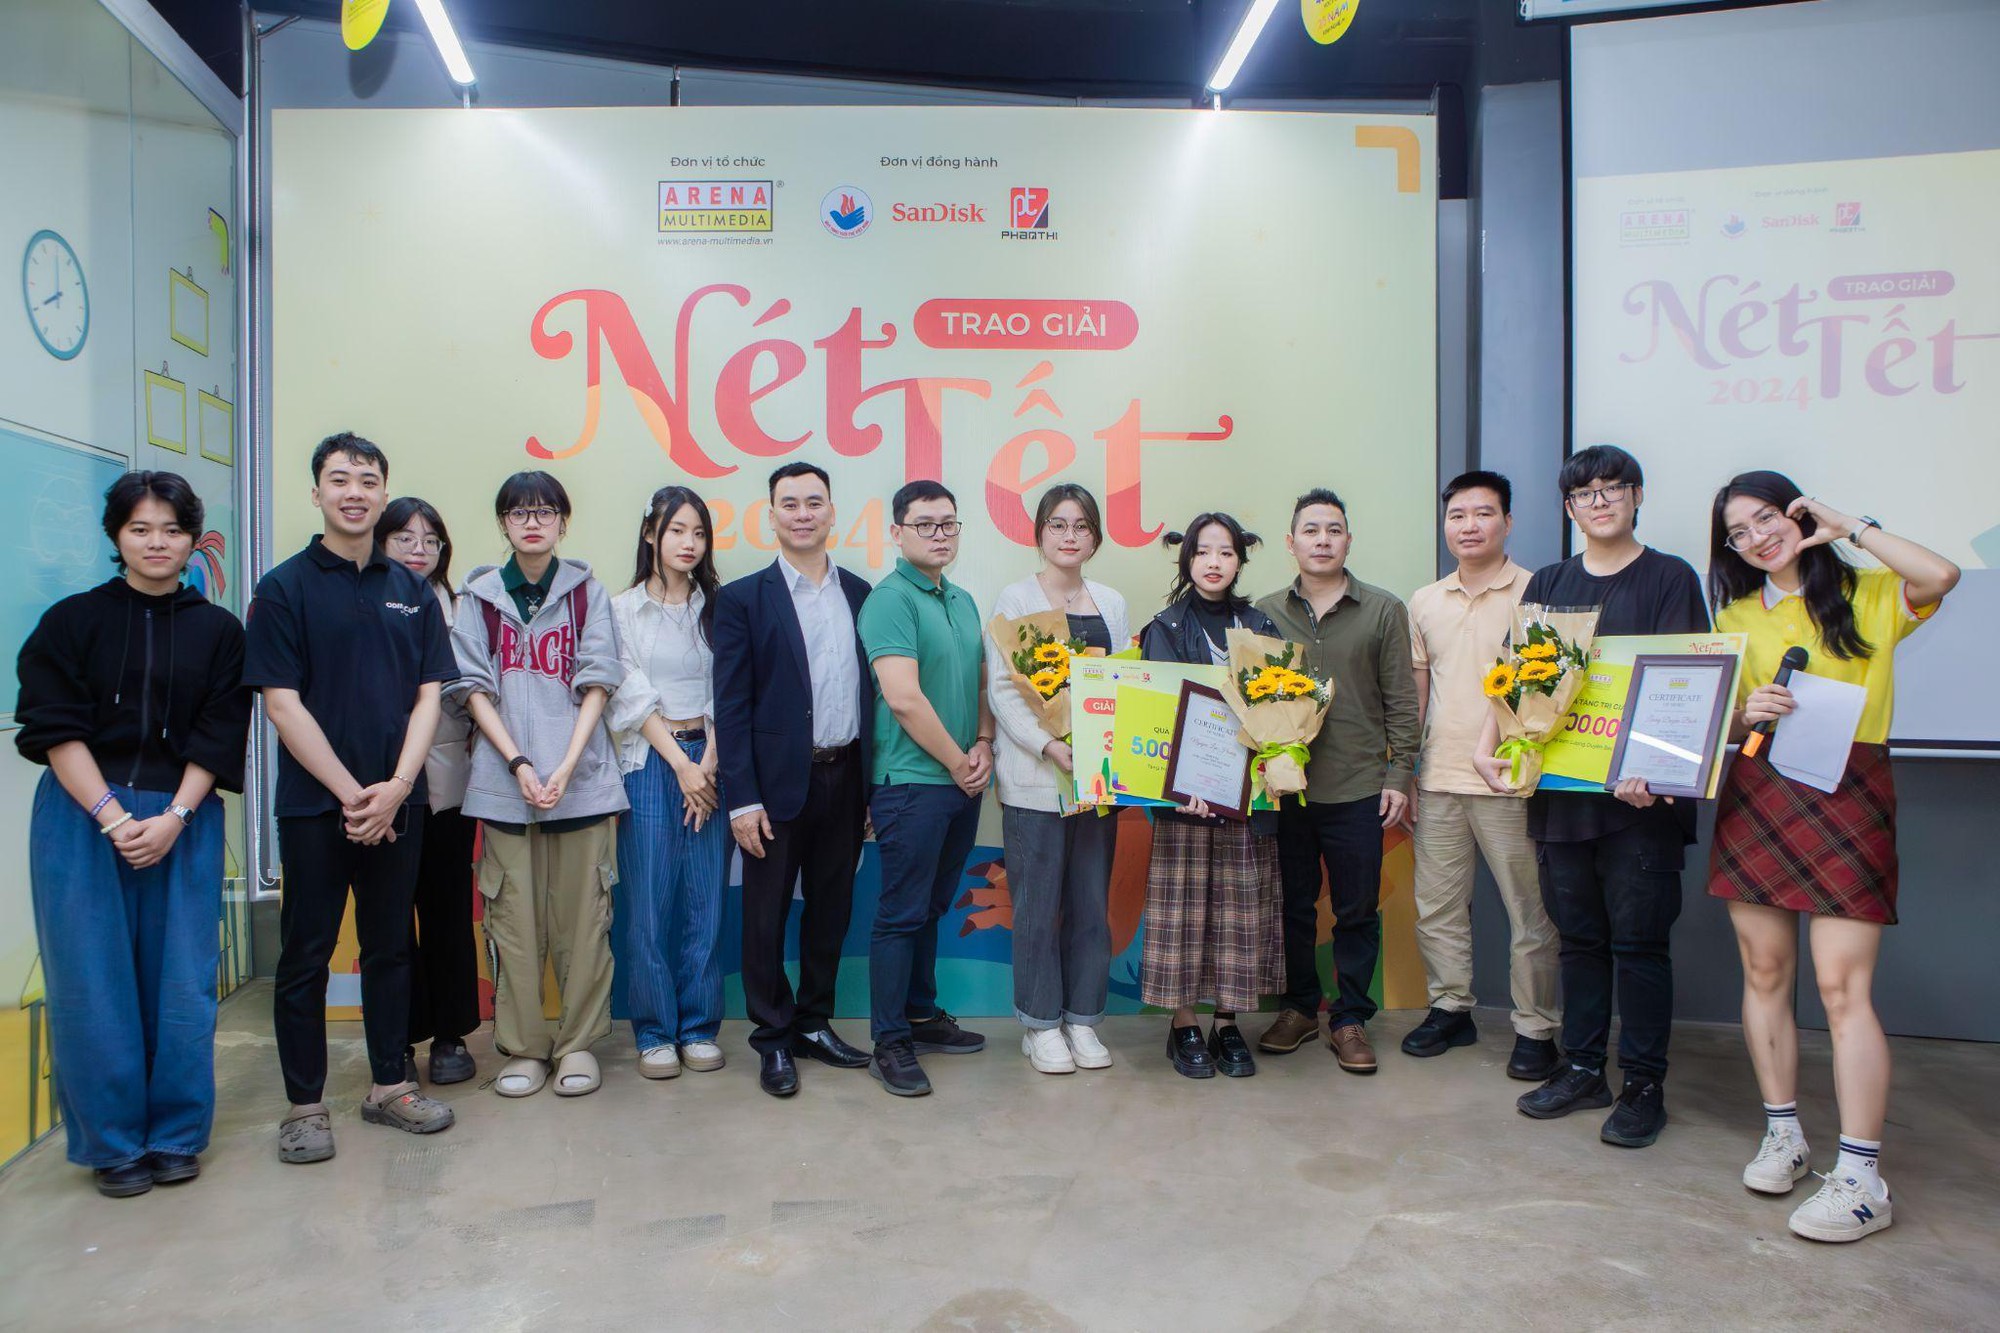 Bảo tàng Tuổi trẻ Việt Nam, Sandisk và Phan Thị hỗ trợ các tài năng trẻ trong cuộc thi Nét Tết - Ảnh 2.